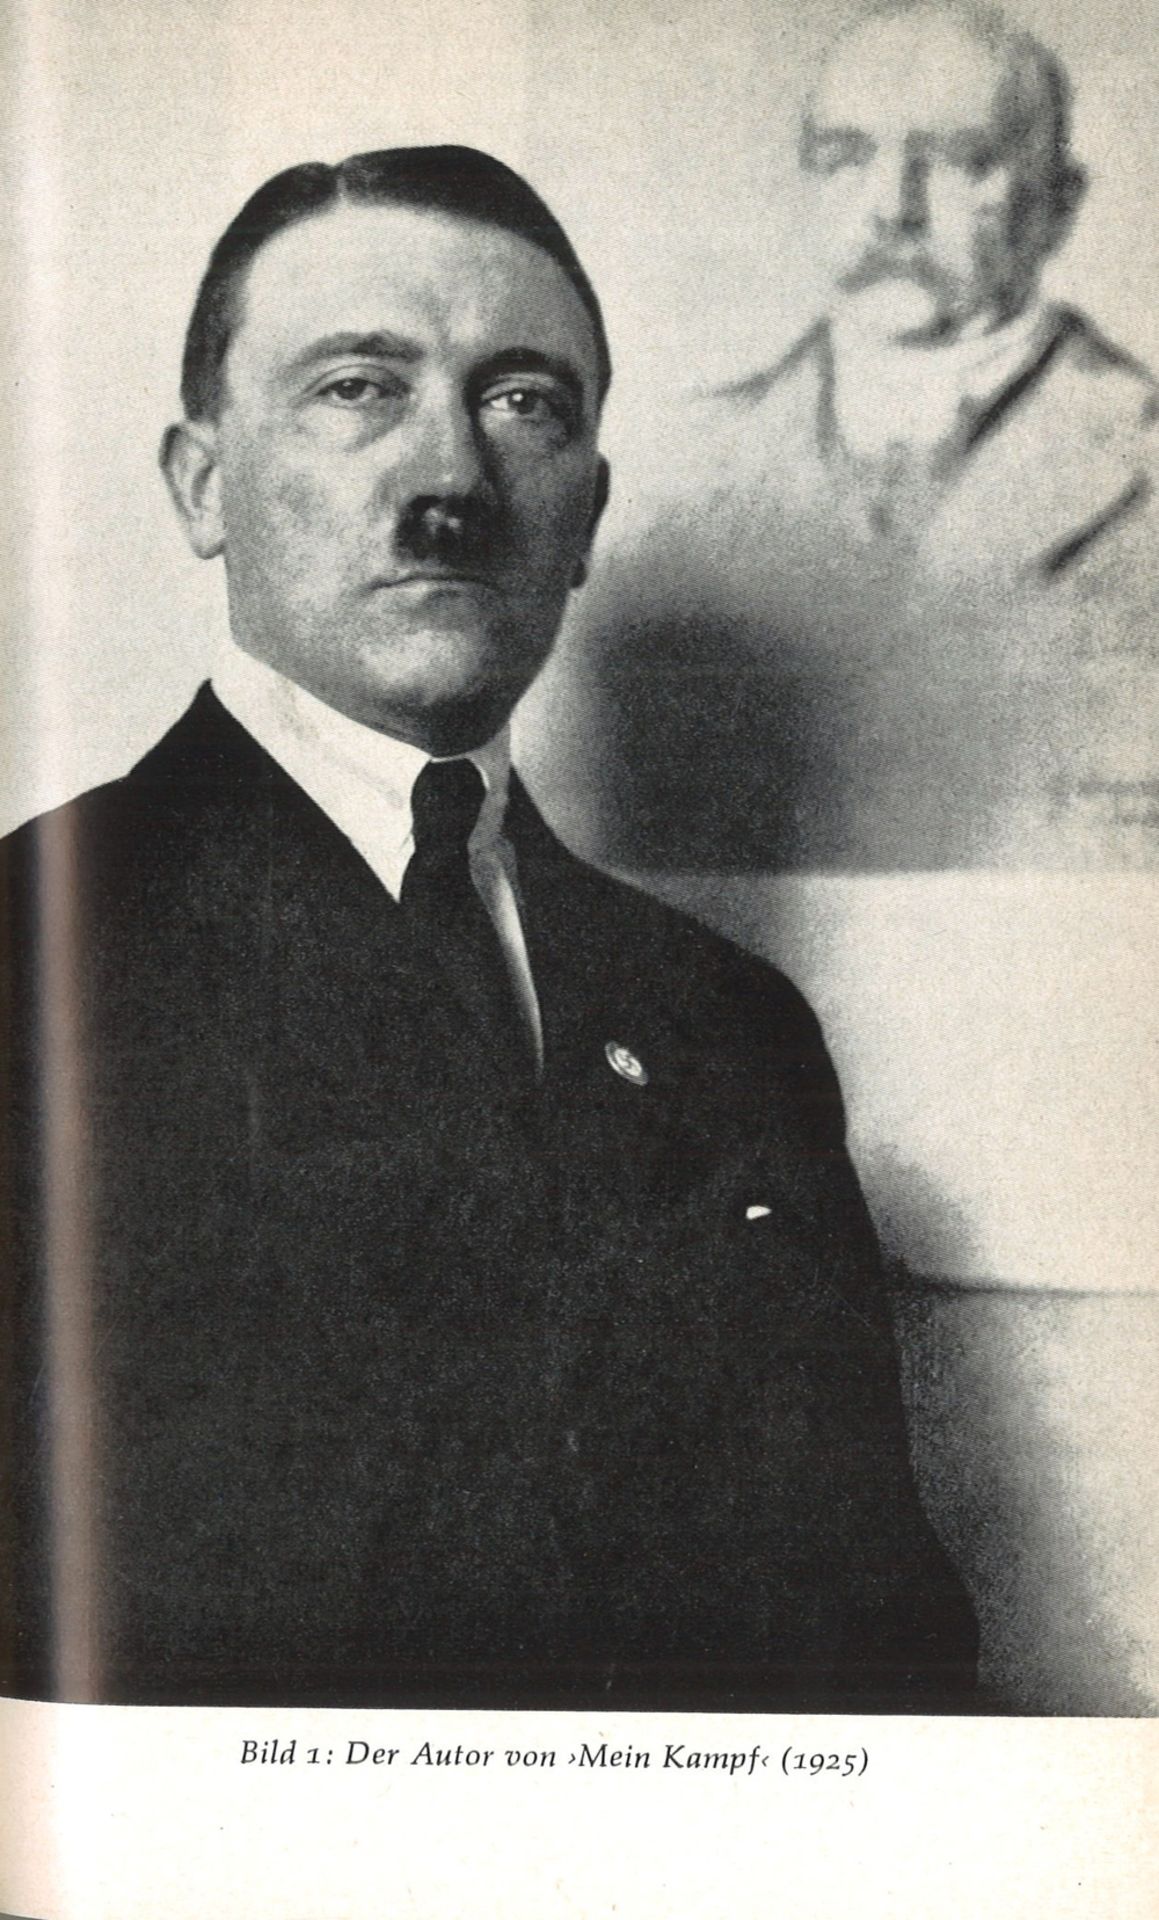 Werner Maser "Adolf Hitlers Mein Kampf" Eine kritische Analyse mit kommentierten Auszügen aus dem - Image 2 of 2